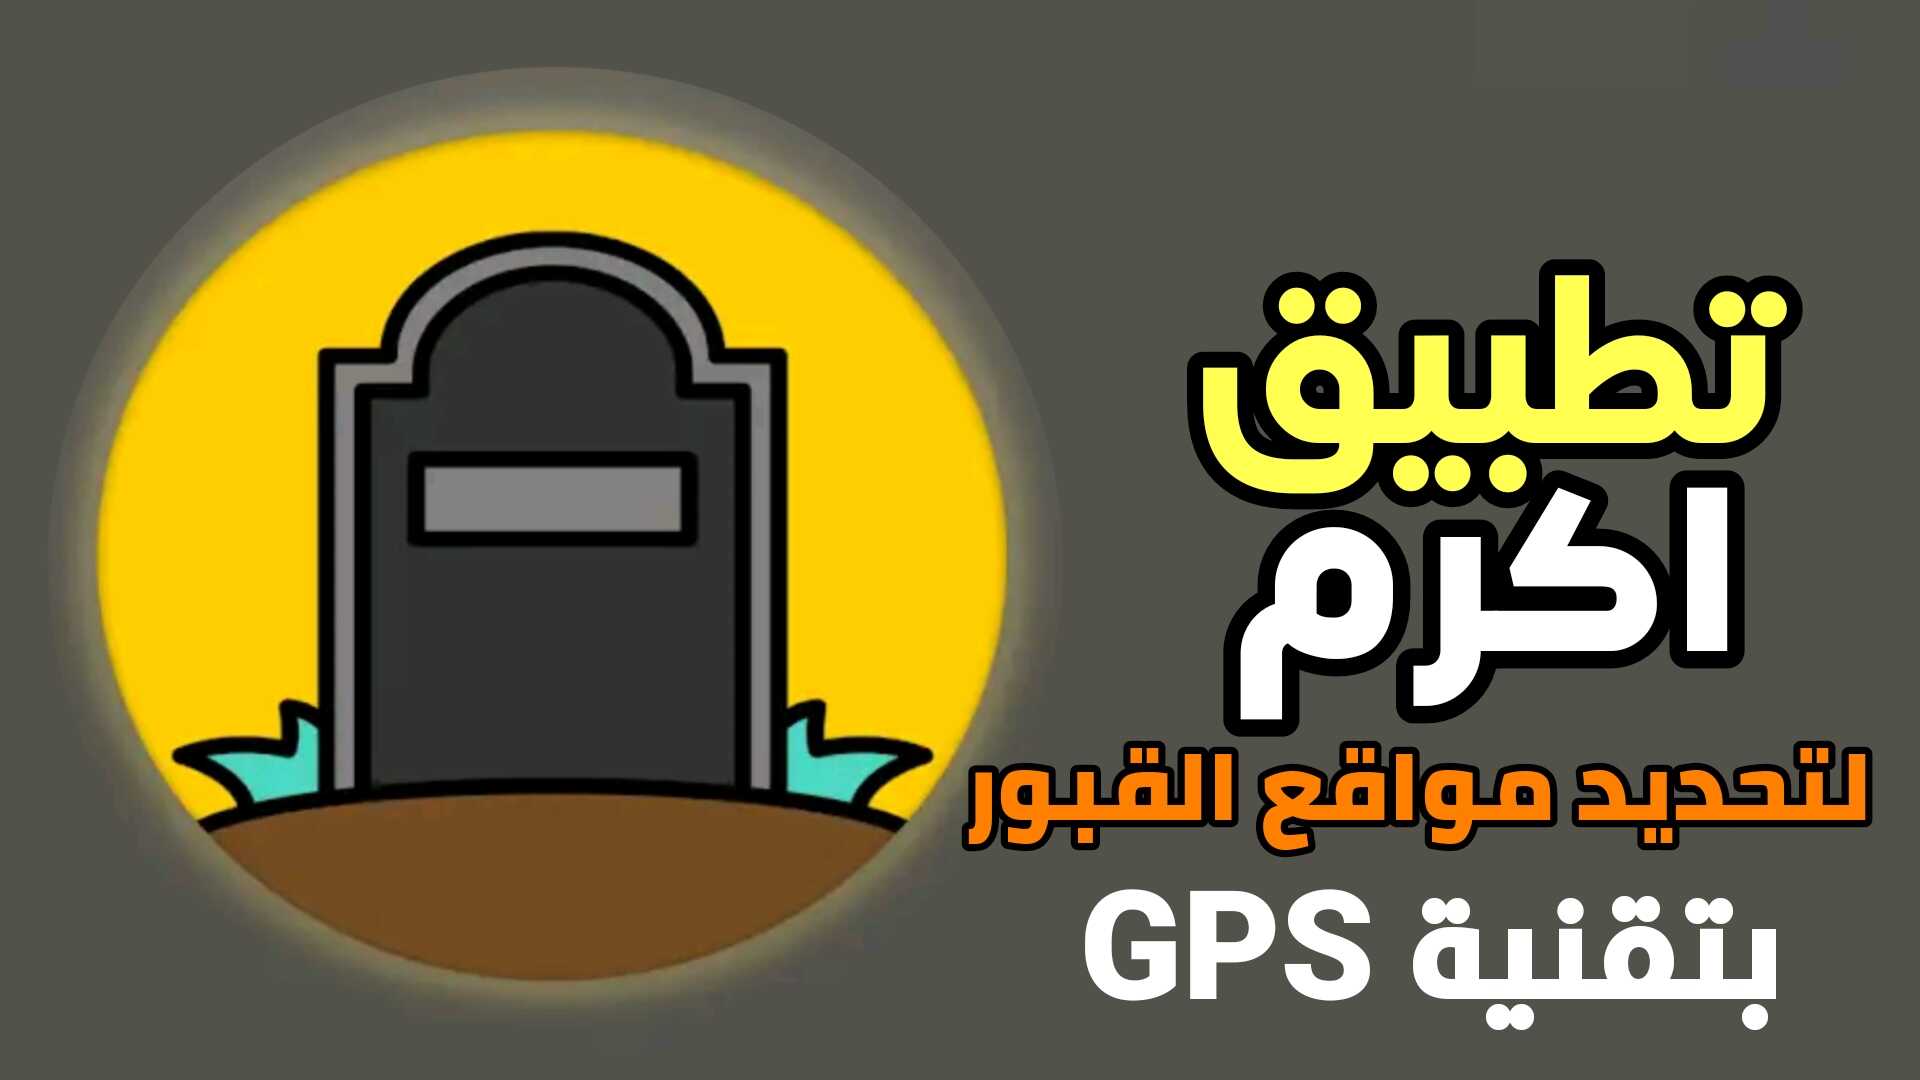 تطبيق اكرم لتحديد مواقع القبور بتقنية GPS